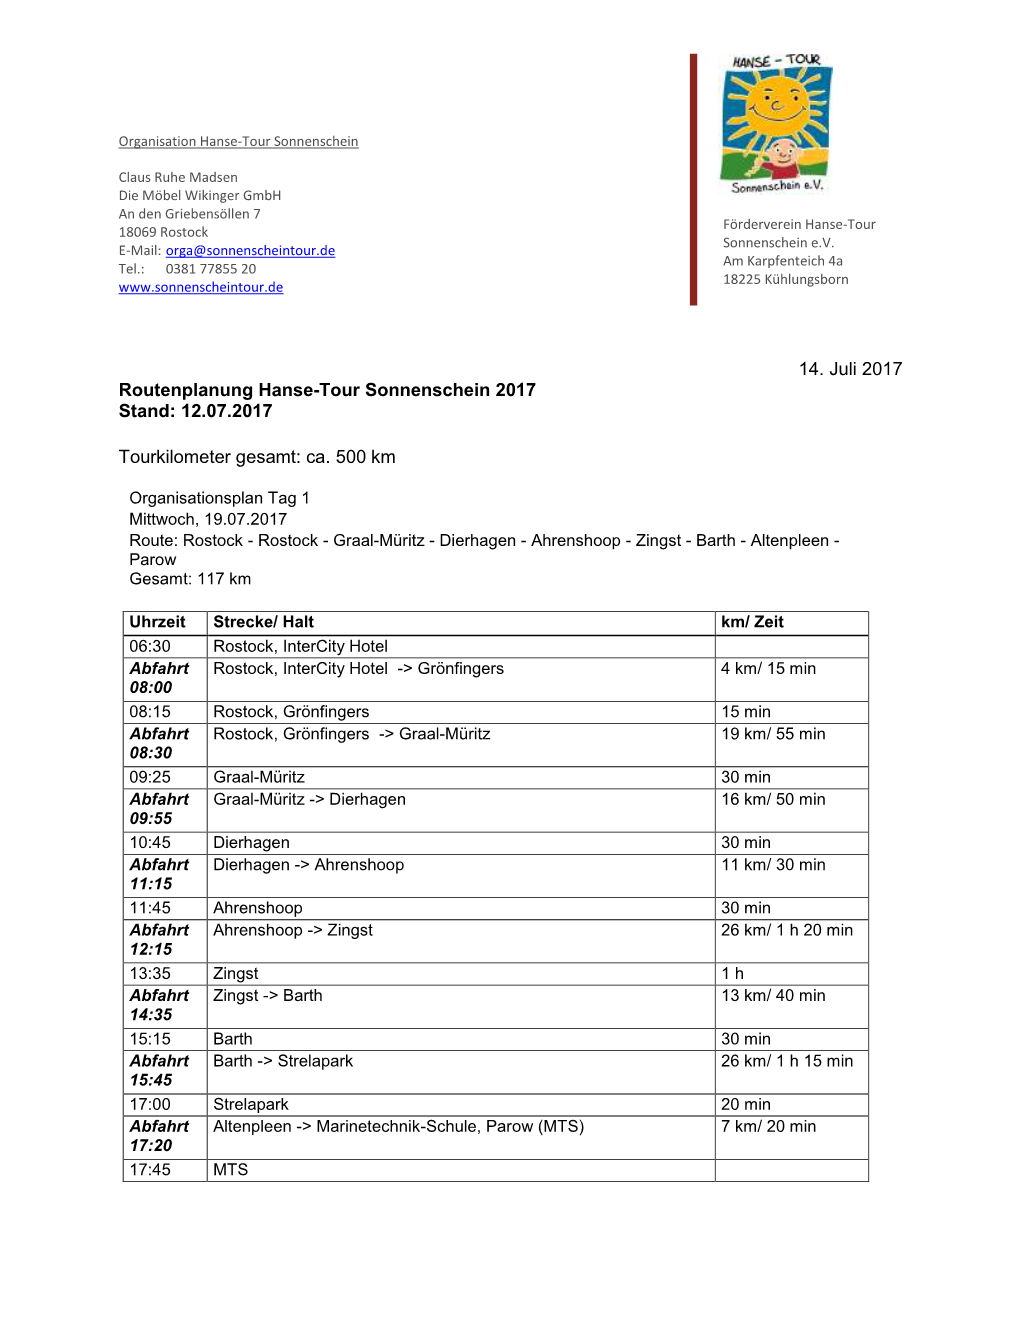 14. Juli 2017 Routenplanung Hanse-Tour Sonnenschein 2017 Stand: 12.07.2017